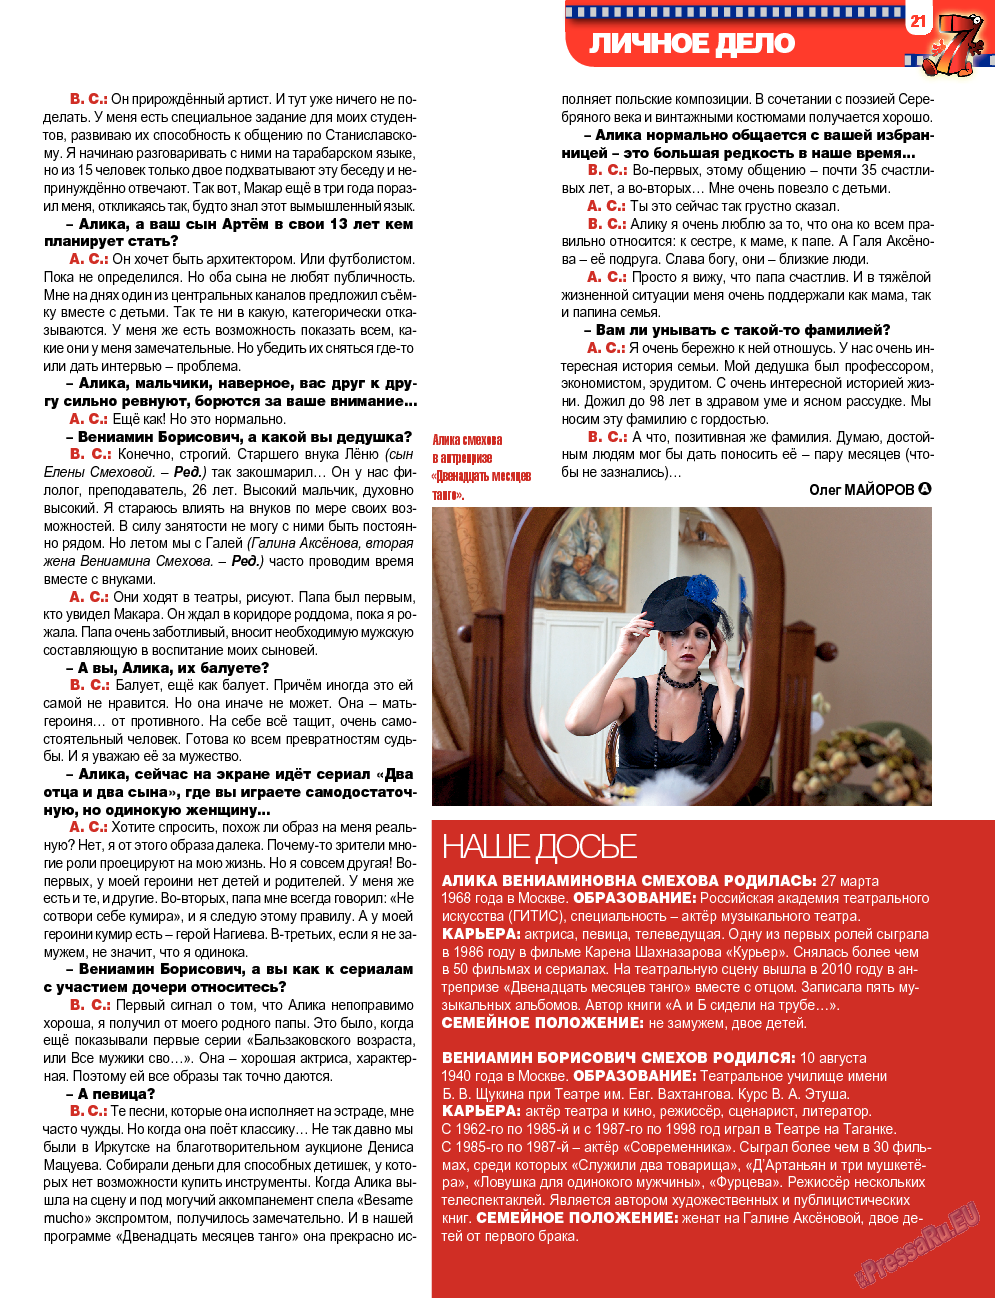 7плюс7я, журнал. 2013 №47 стр.21